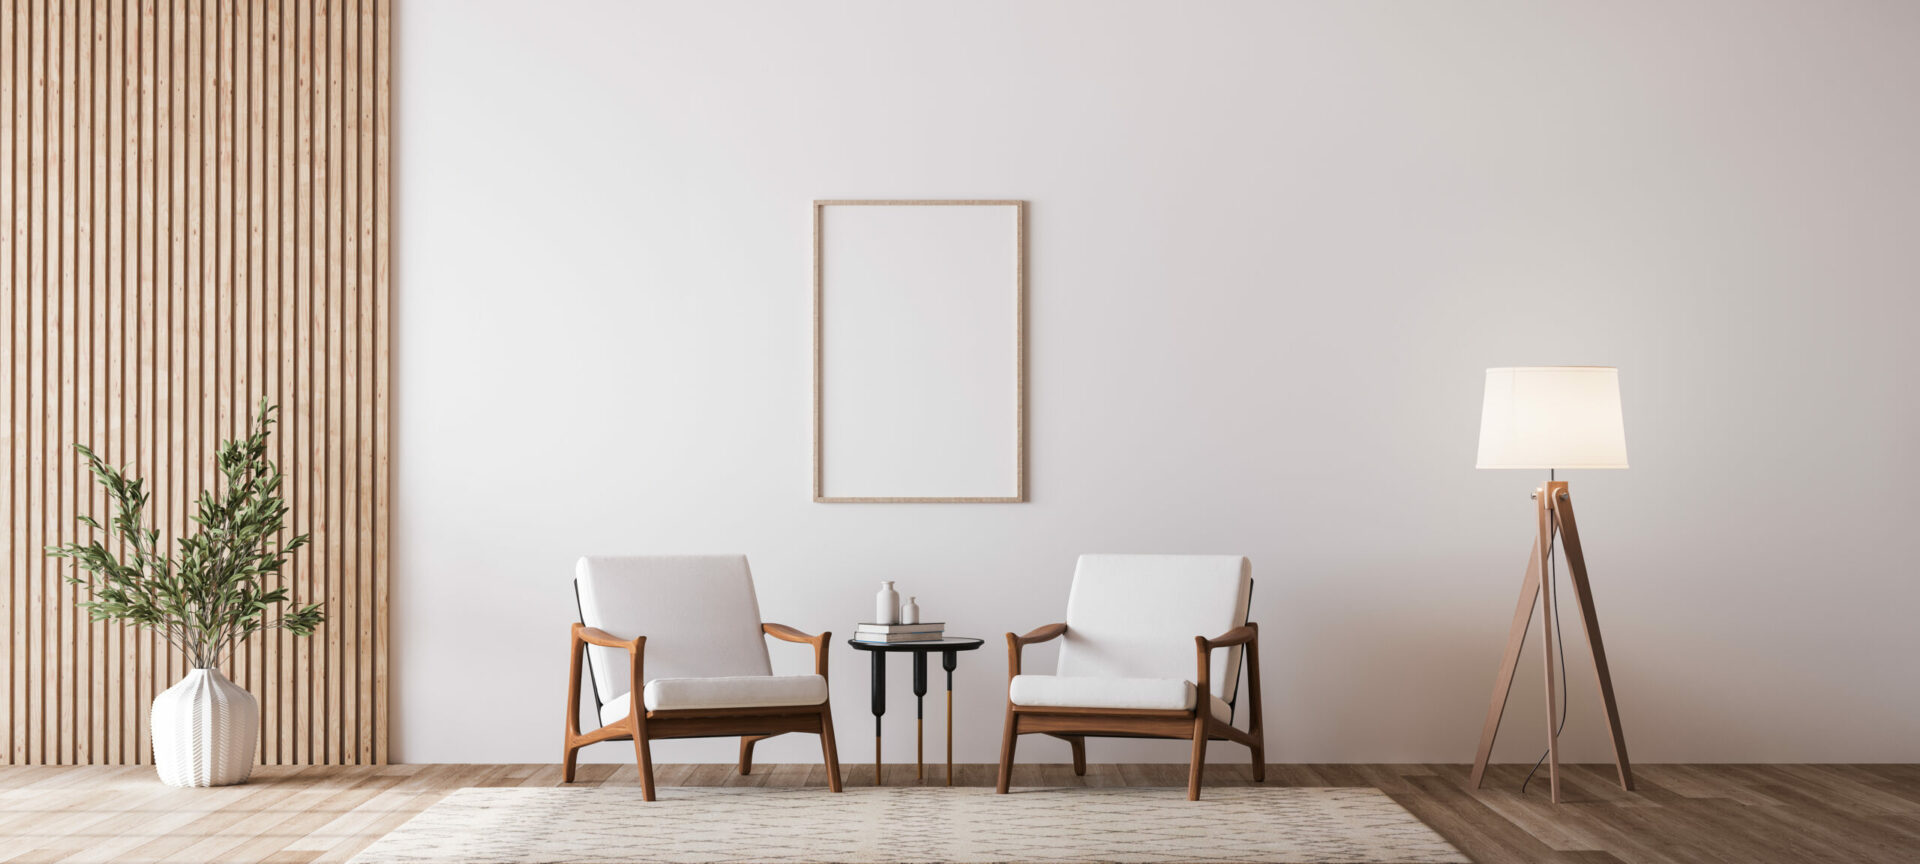 Deux fauteuils design en bois et tissu blanc encadrent une toute petite table. Au milieu sur le mur, un  cadre en bois vide. À droite, un lampadaire en bois et abat-jour blanc, à gauche un vase blanc et branchages verts.